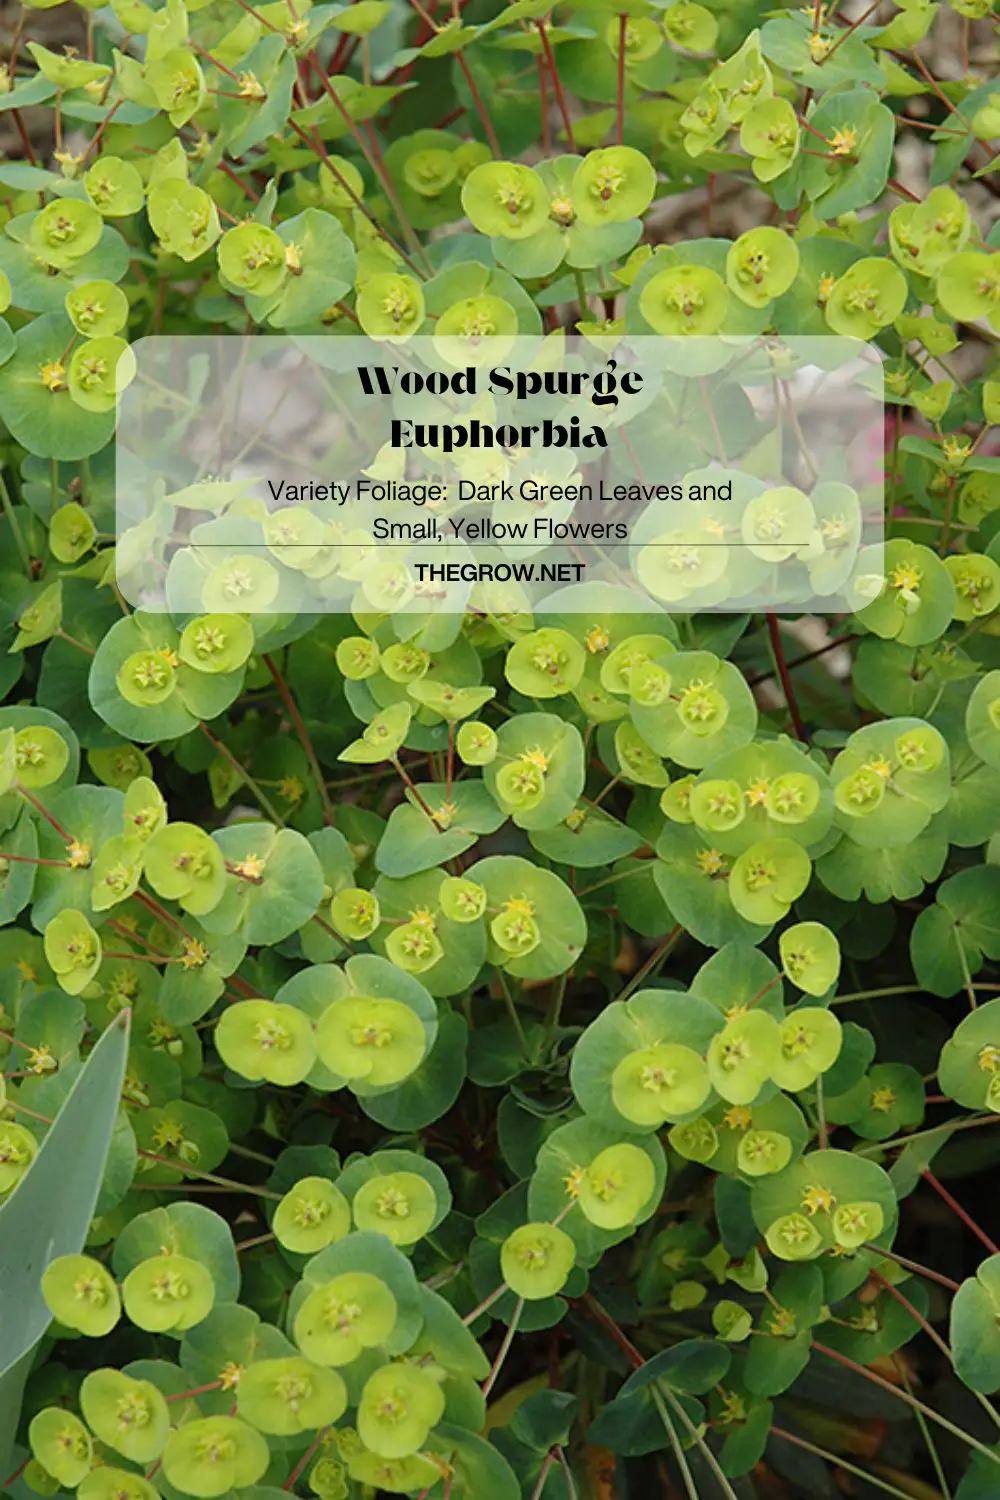 Wood Spurge Euphorbia